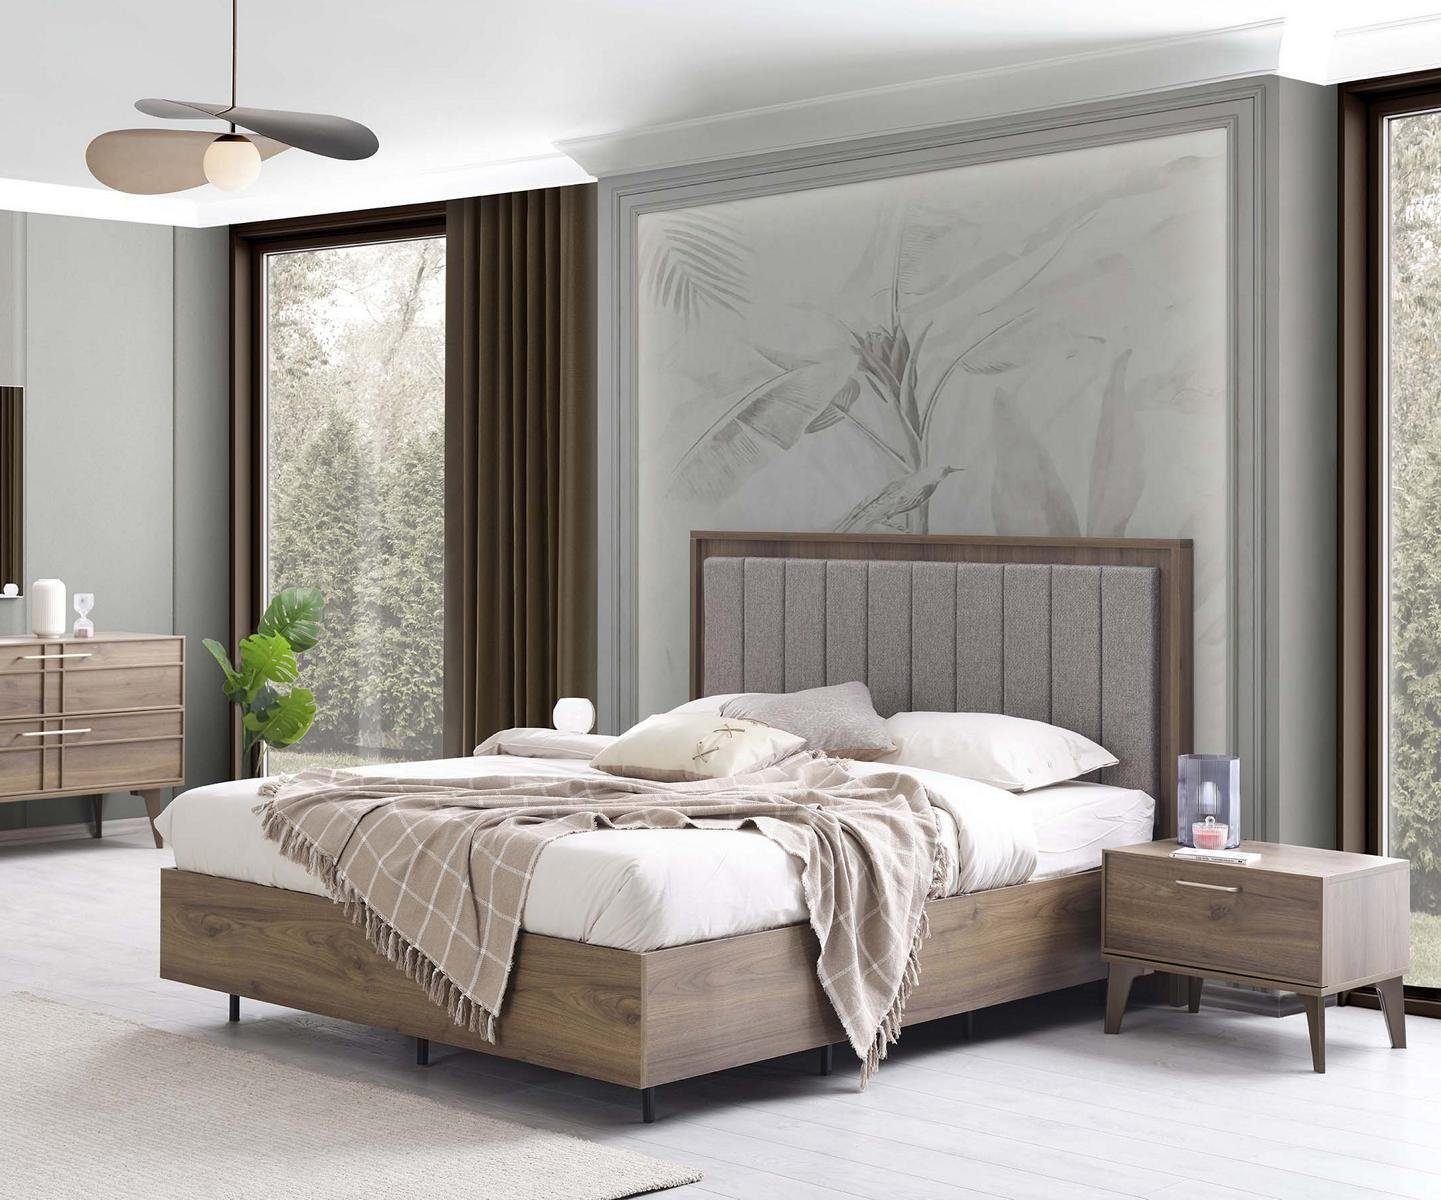 JVmoebel Schlafzimmer-Set Schlafzimmer Garnitur Doppelbett Bett Nachttische Braun Holz Set 3tlg, (Bett / Nachttische), Made In Europe